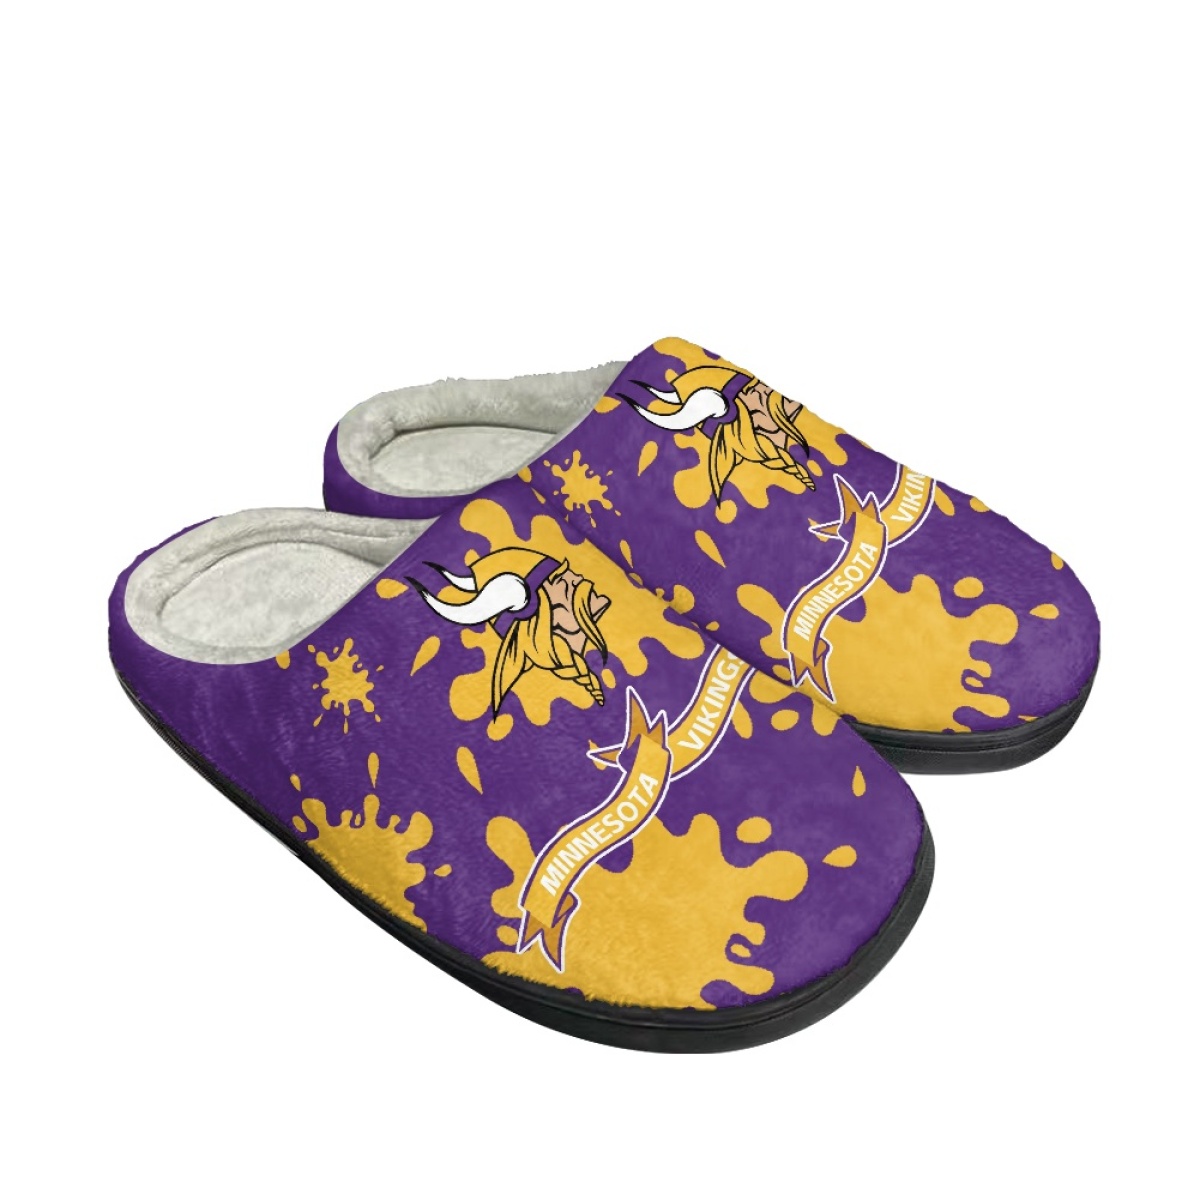 Men's Minnesota Vikings Slippers/Shoes 006